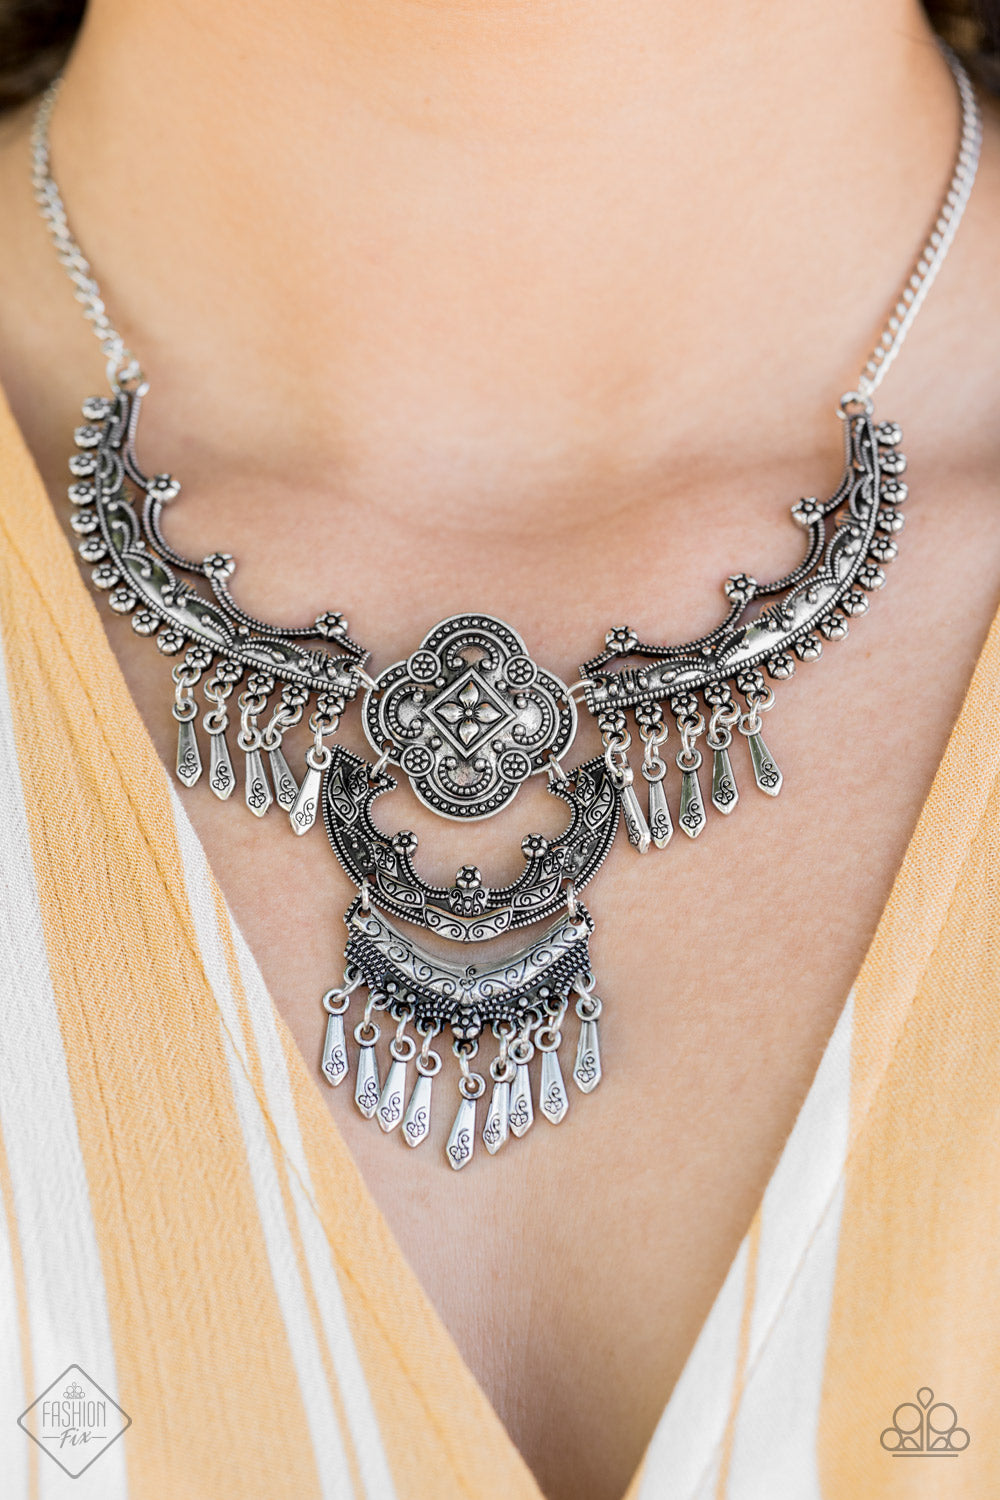 Rogue Vogue Silver Necklaces Paparazzi Accessories Lady T Accessories - Lady T Accessories